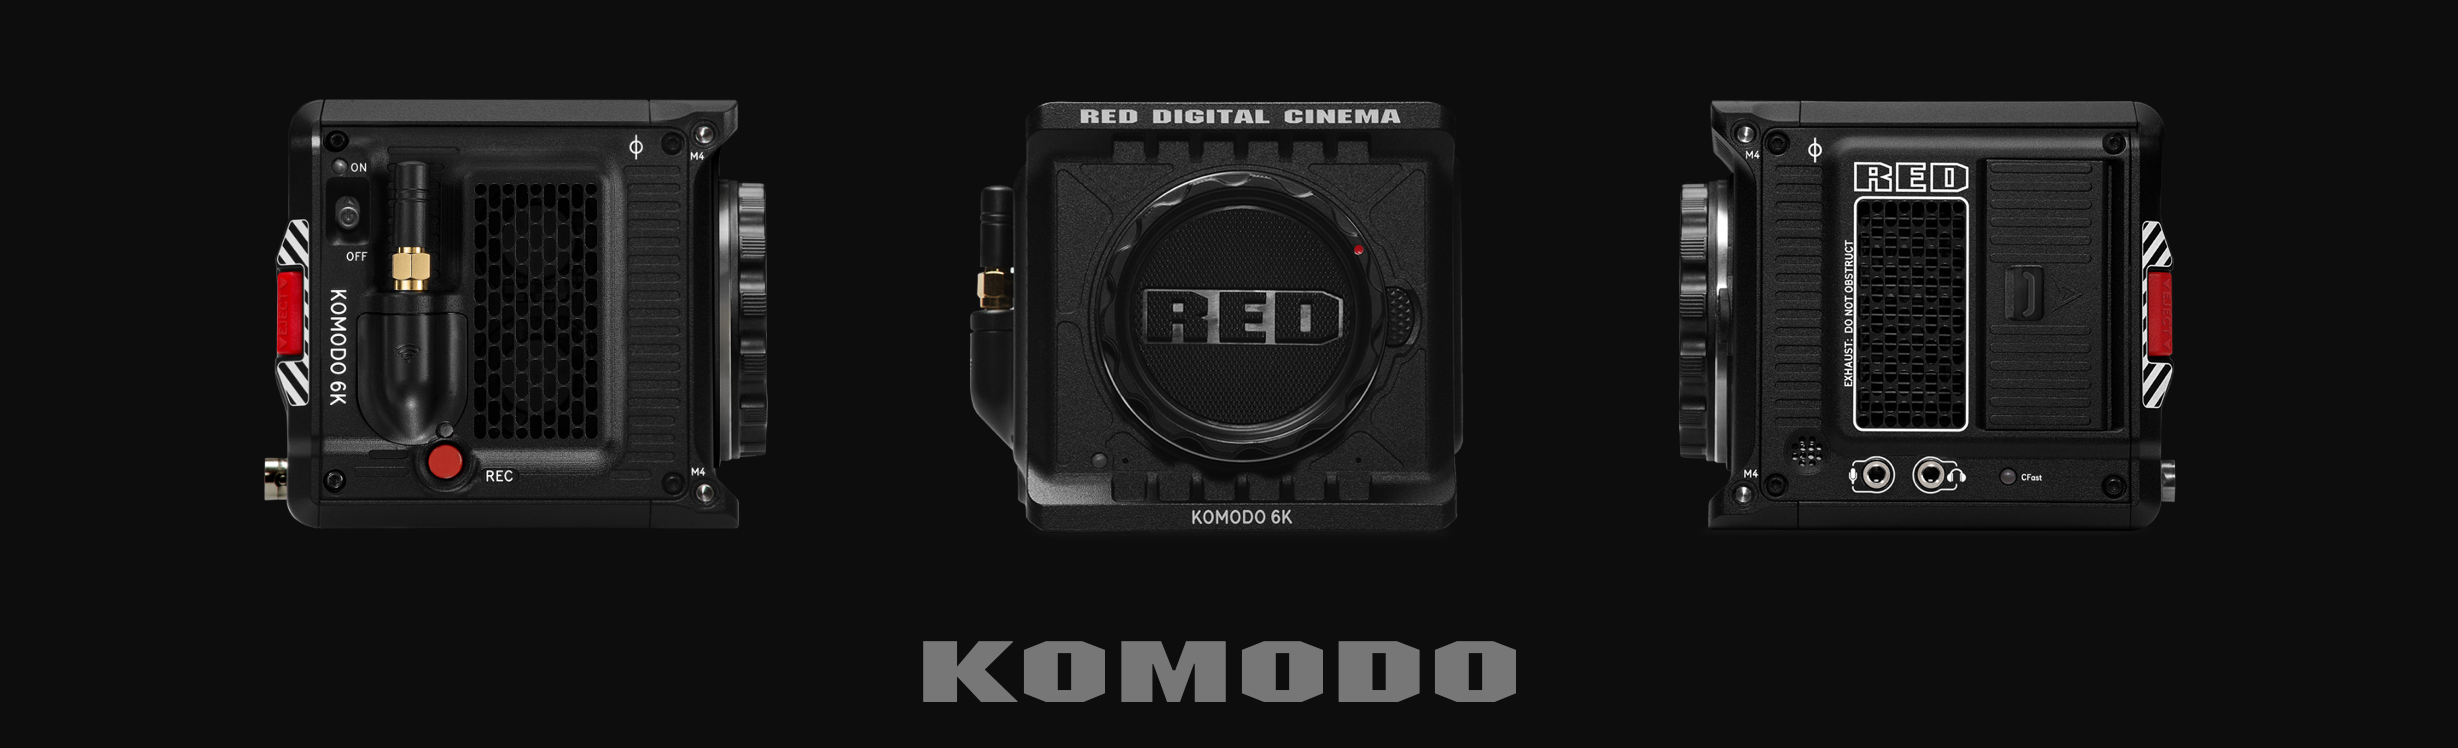 Camera cinema RED KOMODO